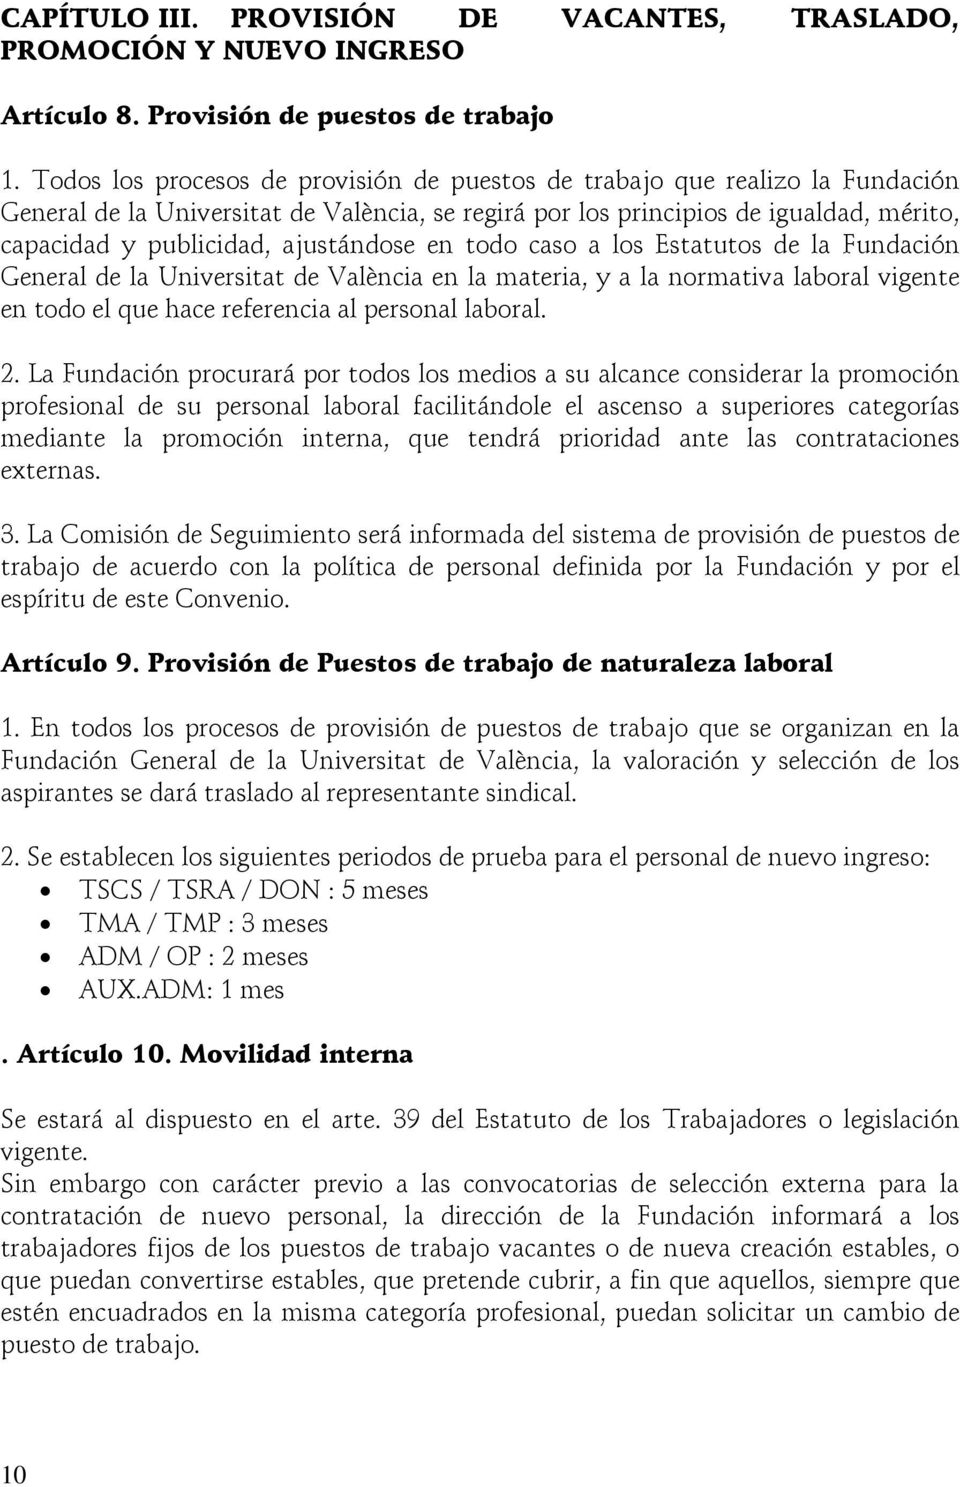 ajustándose en todo caso a los Estatutos de la Fundación General de la Universitat de València en la materia, y a la normativa laboral vigente en todo el que hace referencia al personal laboral. 2.